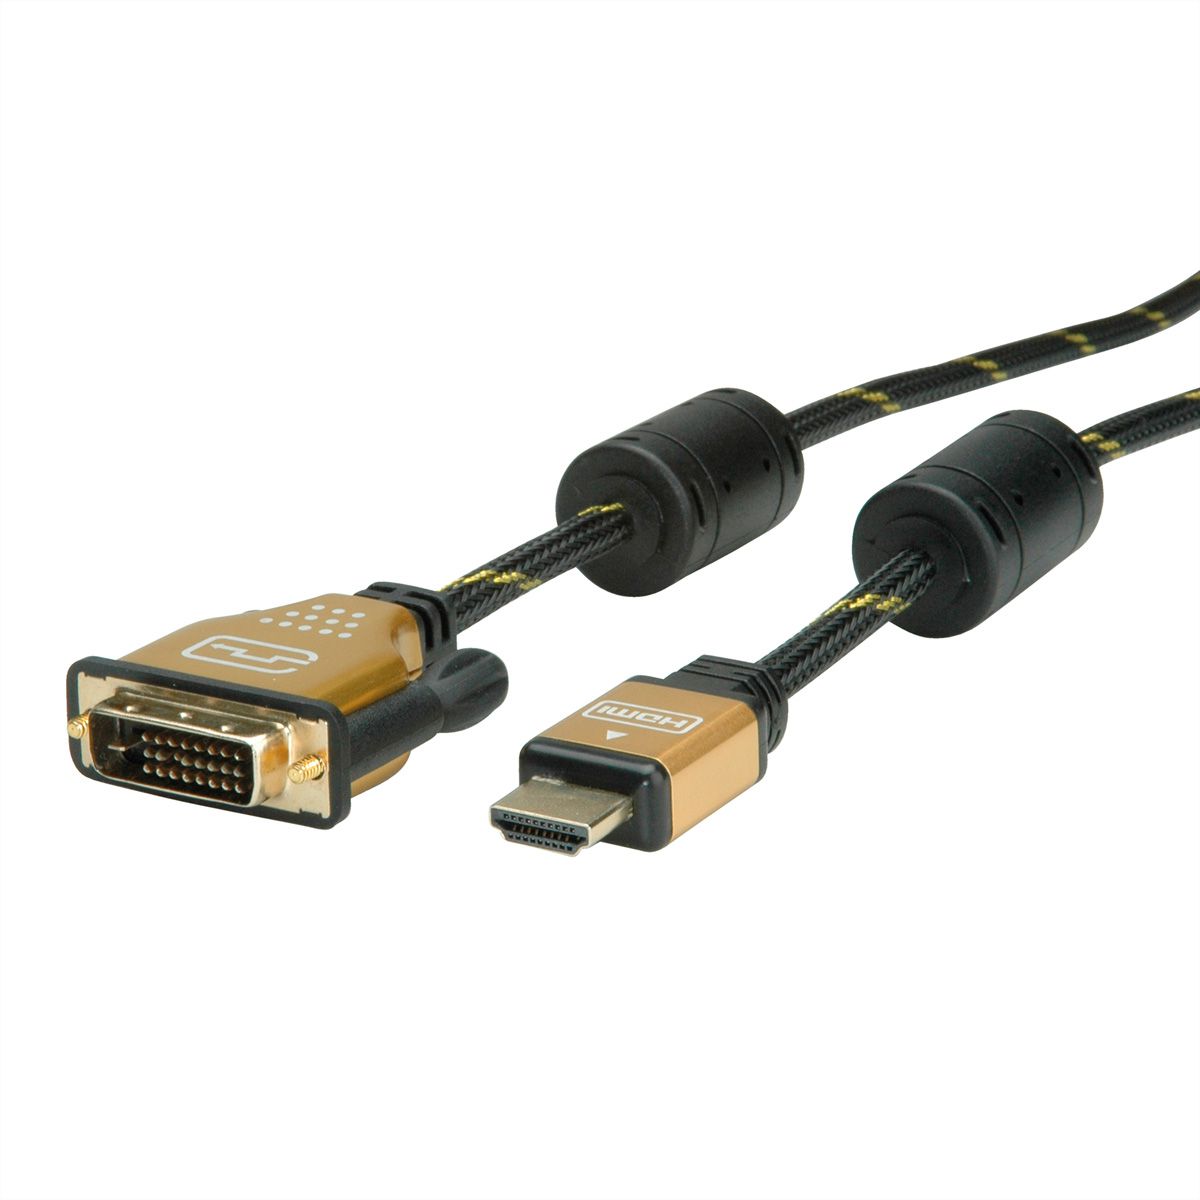 10m ROLINE Câble DVI HDMI I Câble décran avec connecteur DVI D 24+1 Dual Link et HDMI I 4K Ultra HD I noir/argent 